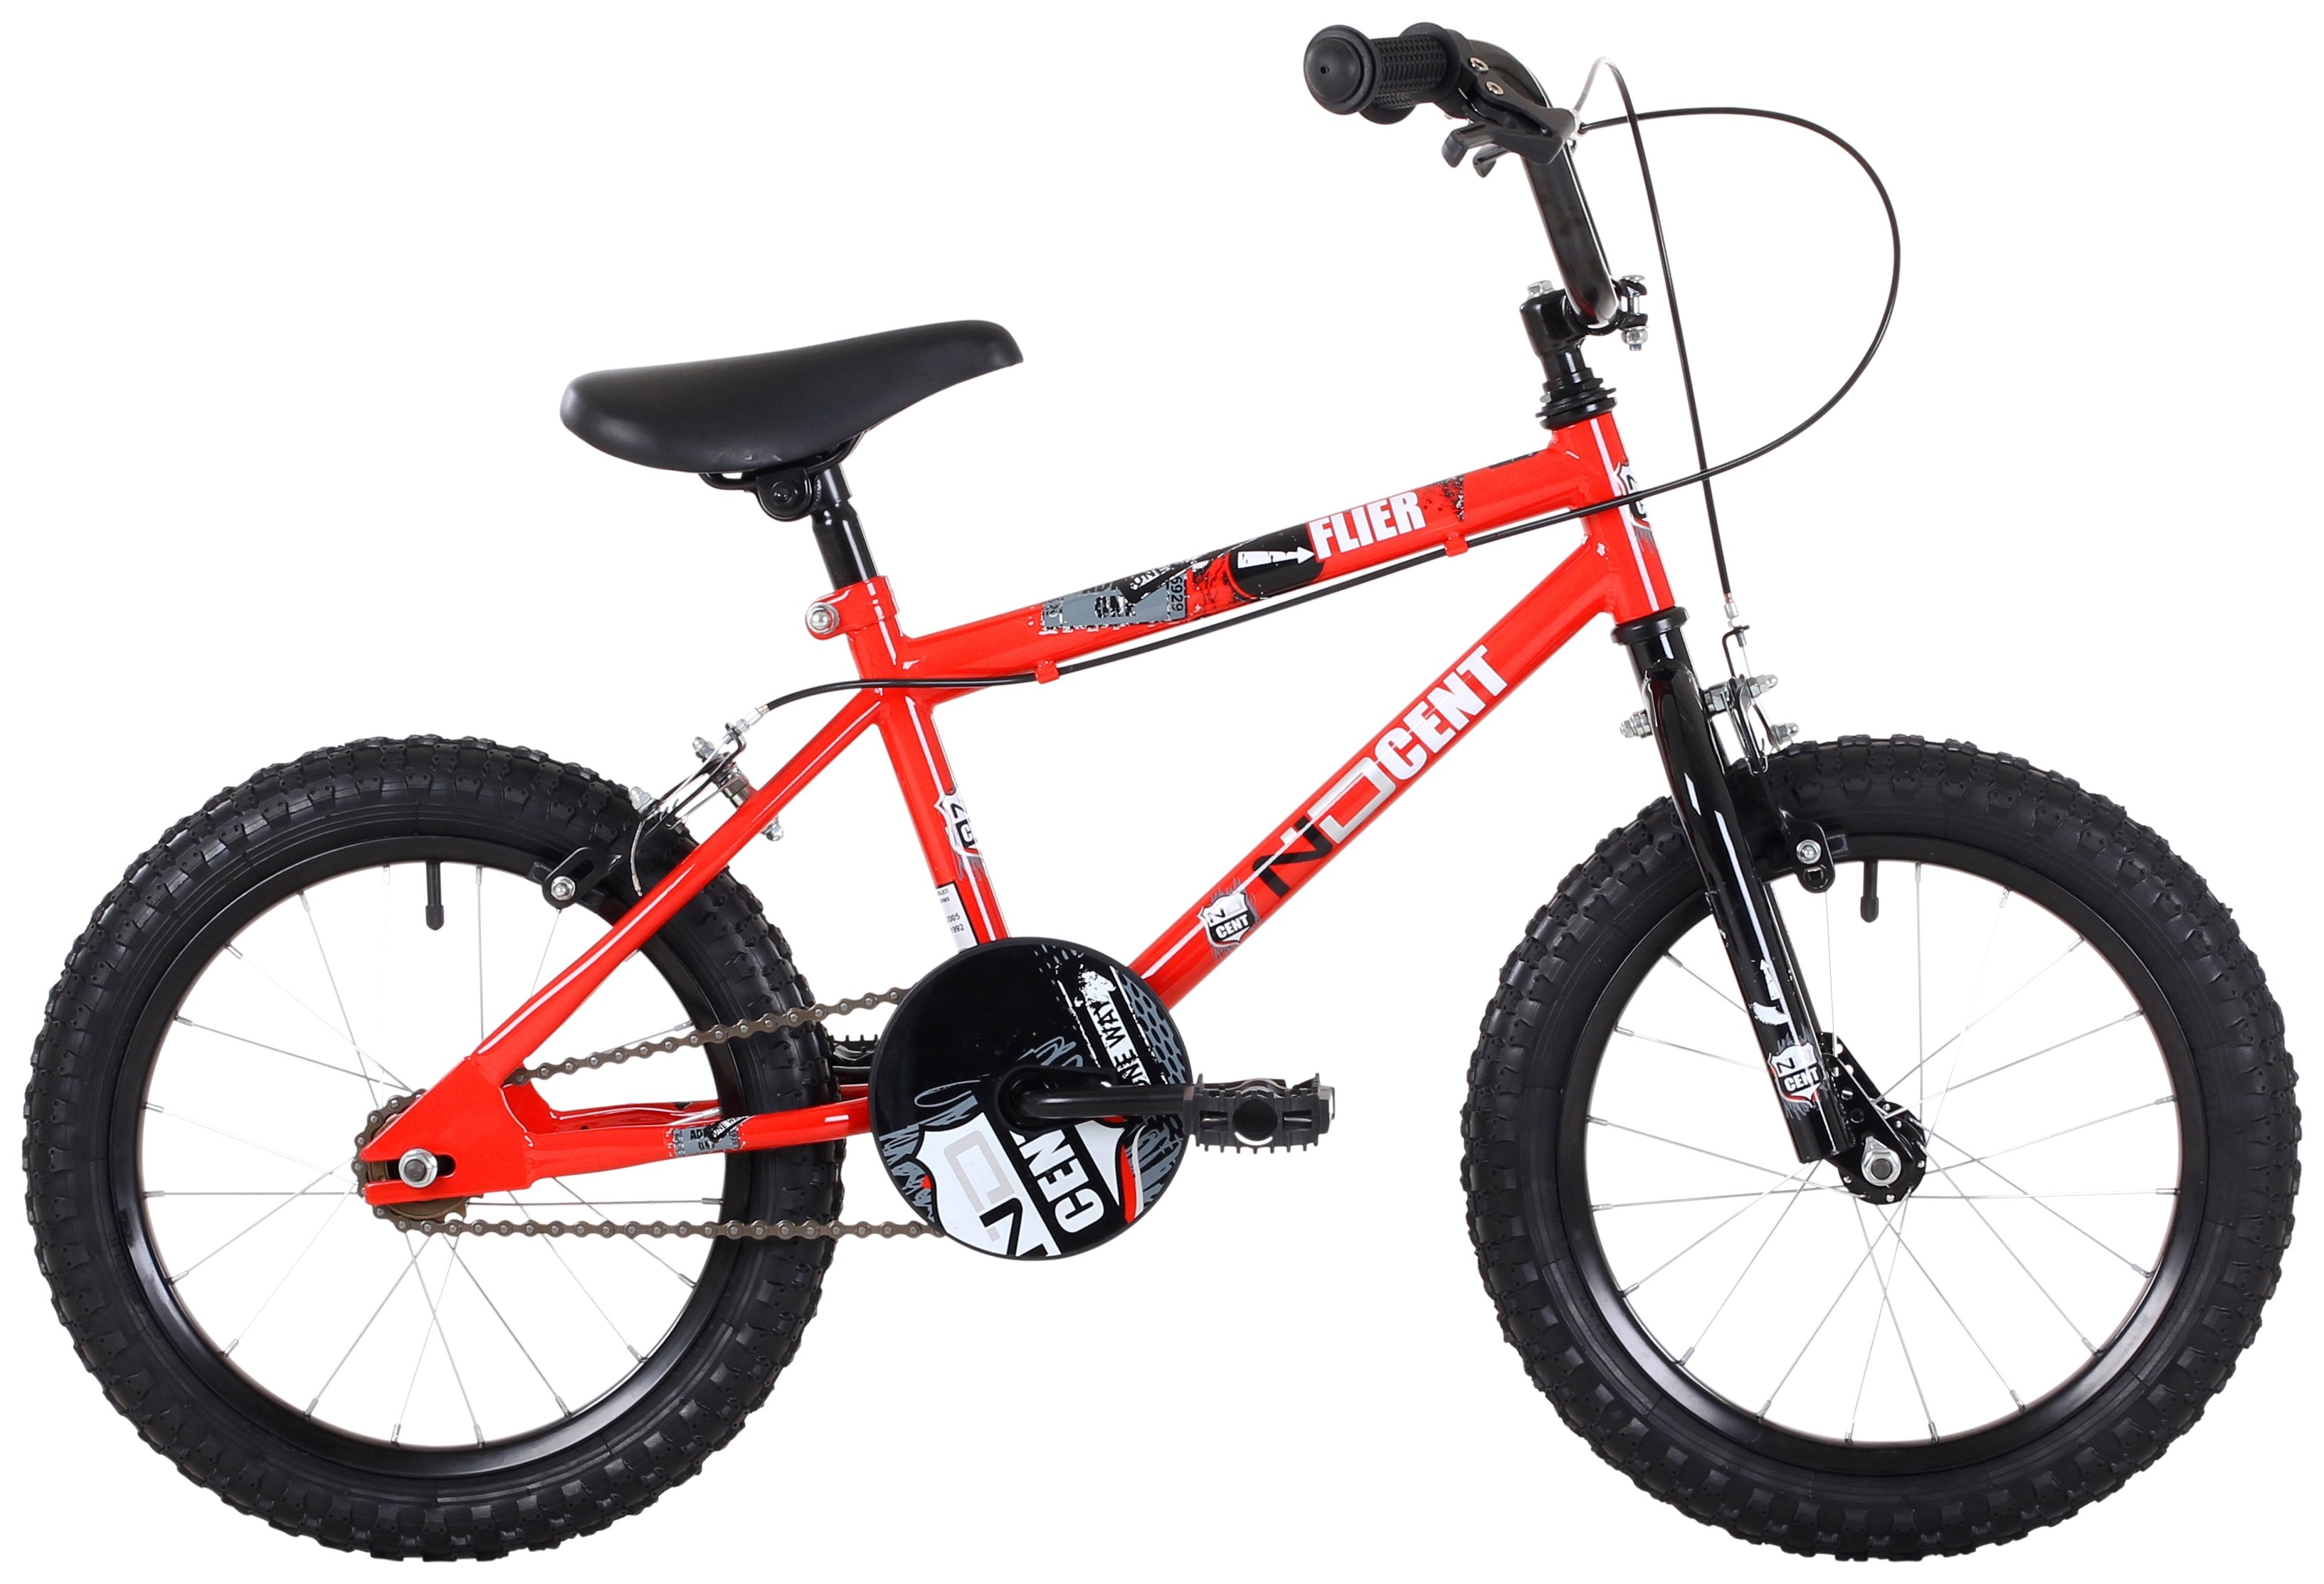 16 inch bmx bike for sale